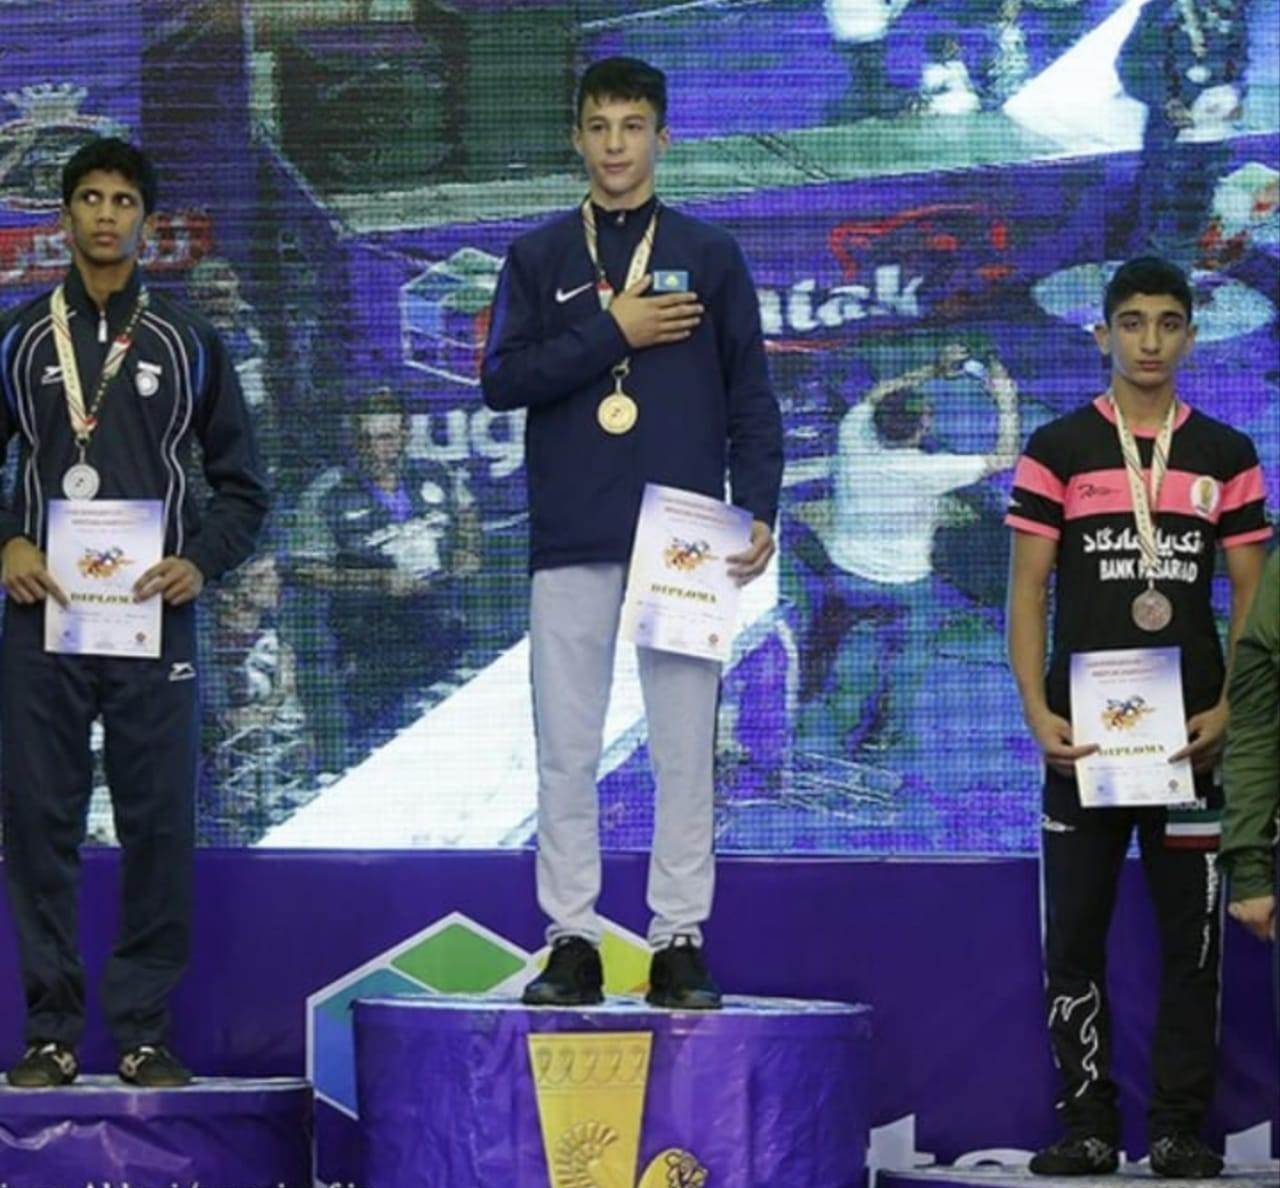 Азиз Газымов завоевал золотую медаль на ЧА по греко-римской борьбе среди юношей в Тегеране